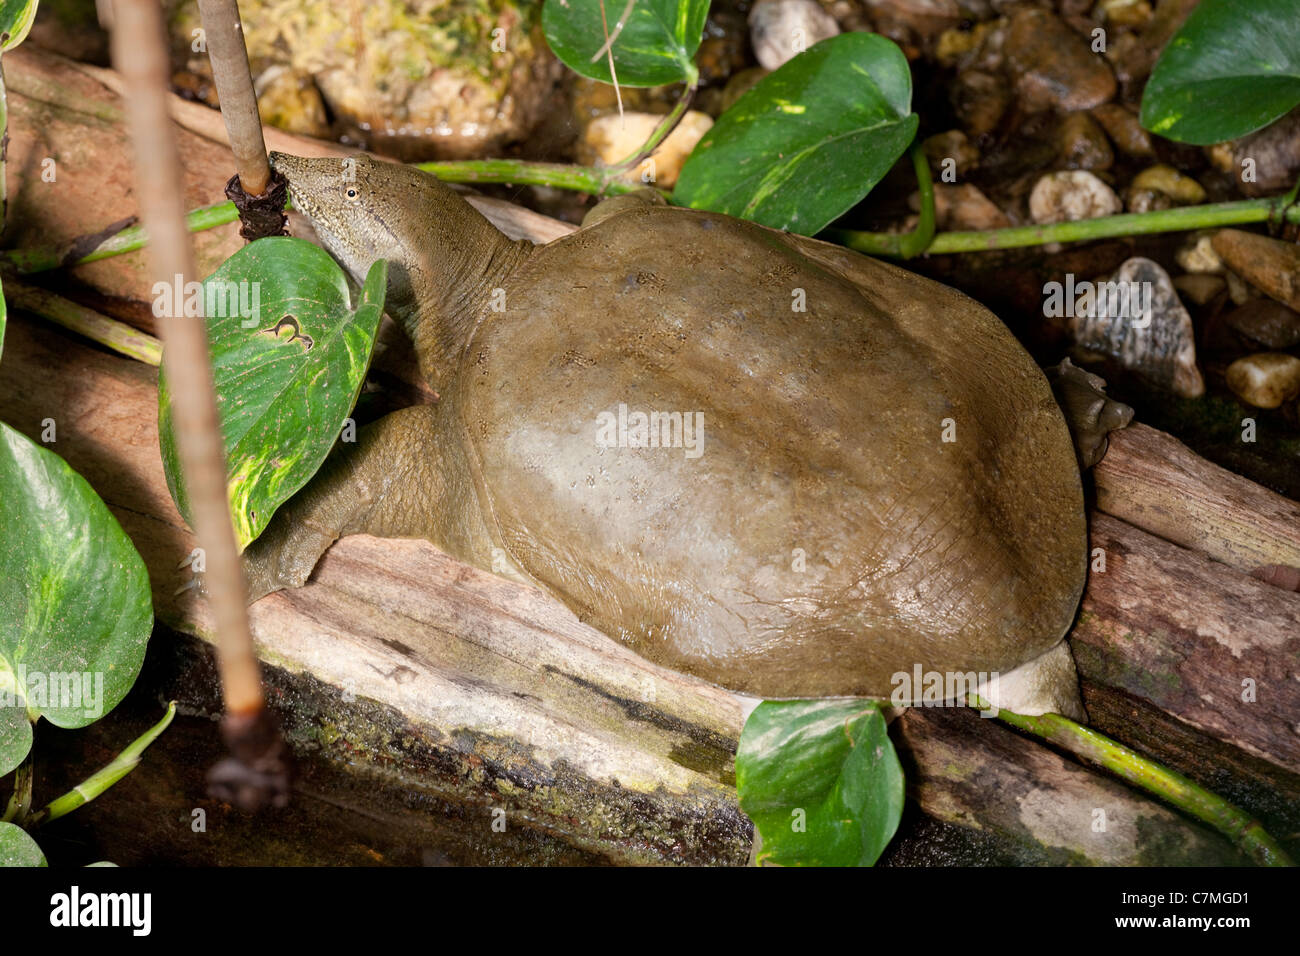 Chinesische Softshell Schildkröte Pelodiscus (Trionyx) Sinensis. In freier Wildbahn bedroht. Für den menschlichen Verzehr in China gezüchtet. Stockfoto